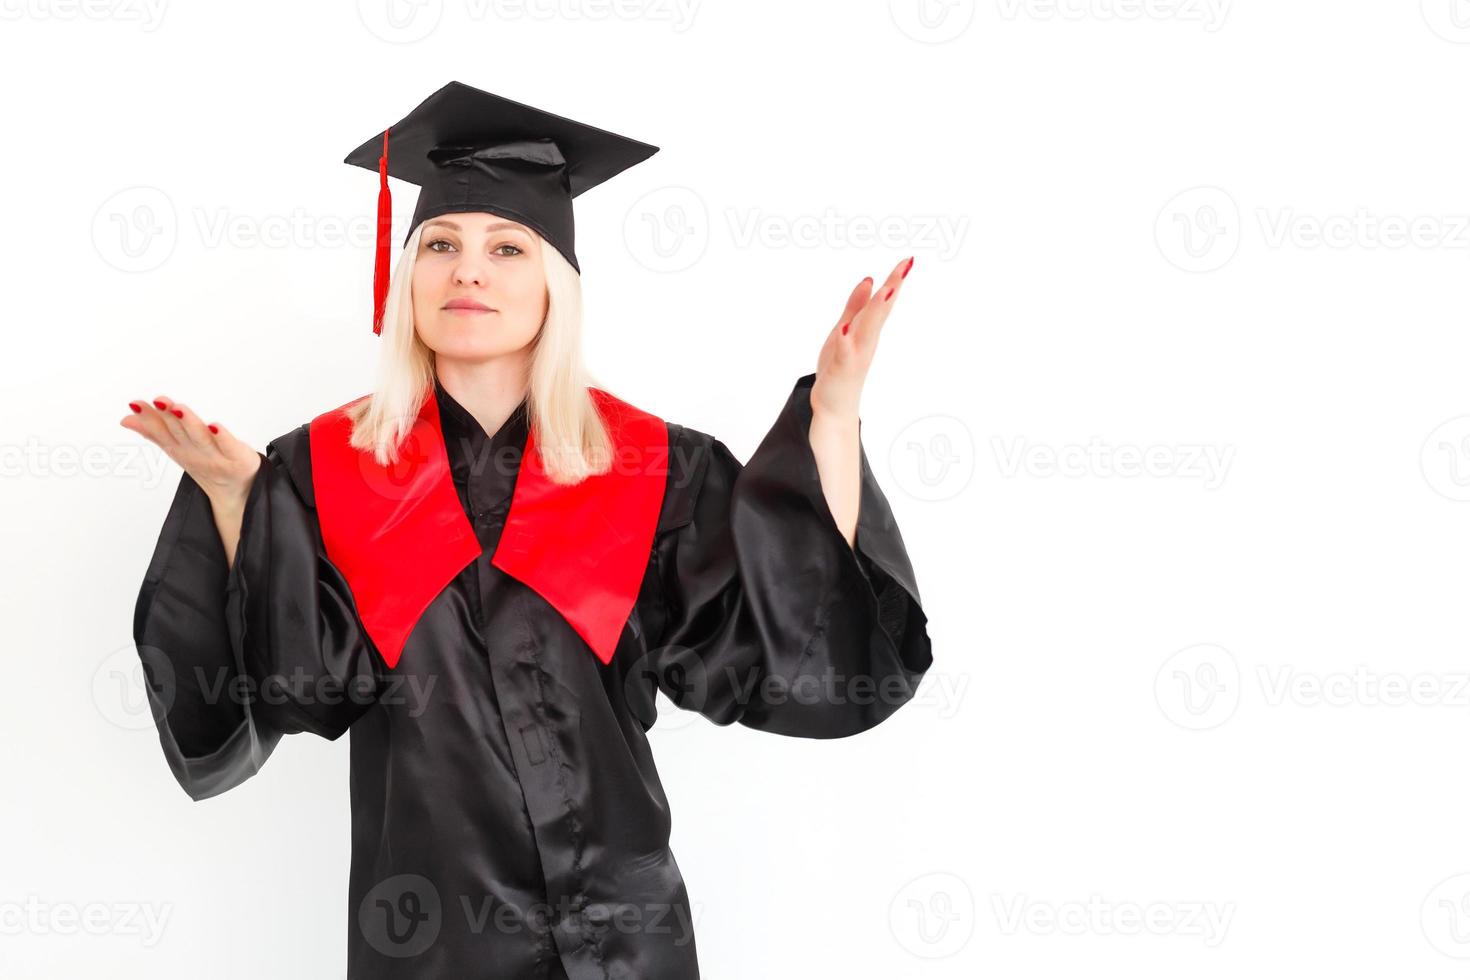 une étudiante diplômée heureuse et excitée se tient debout dans le manteau, souriant et regardant la caméra photo